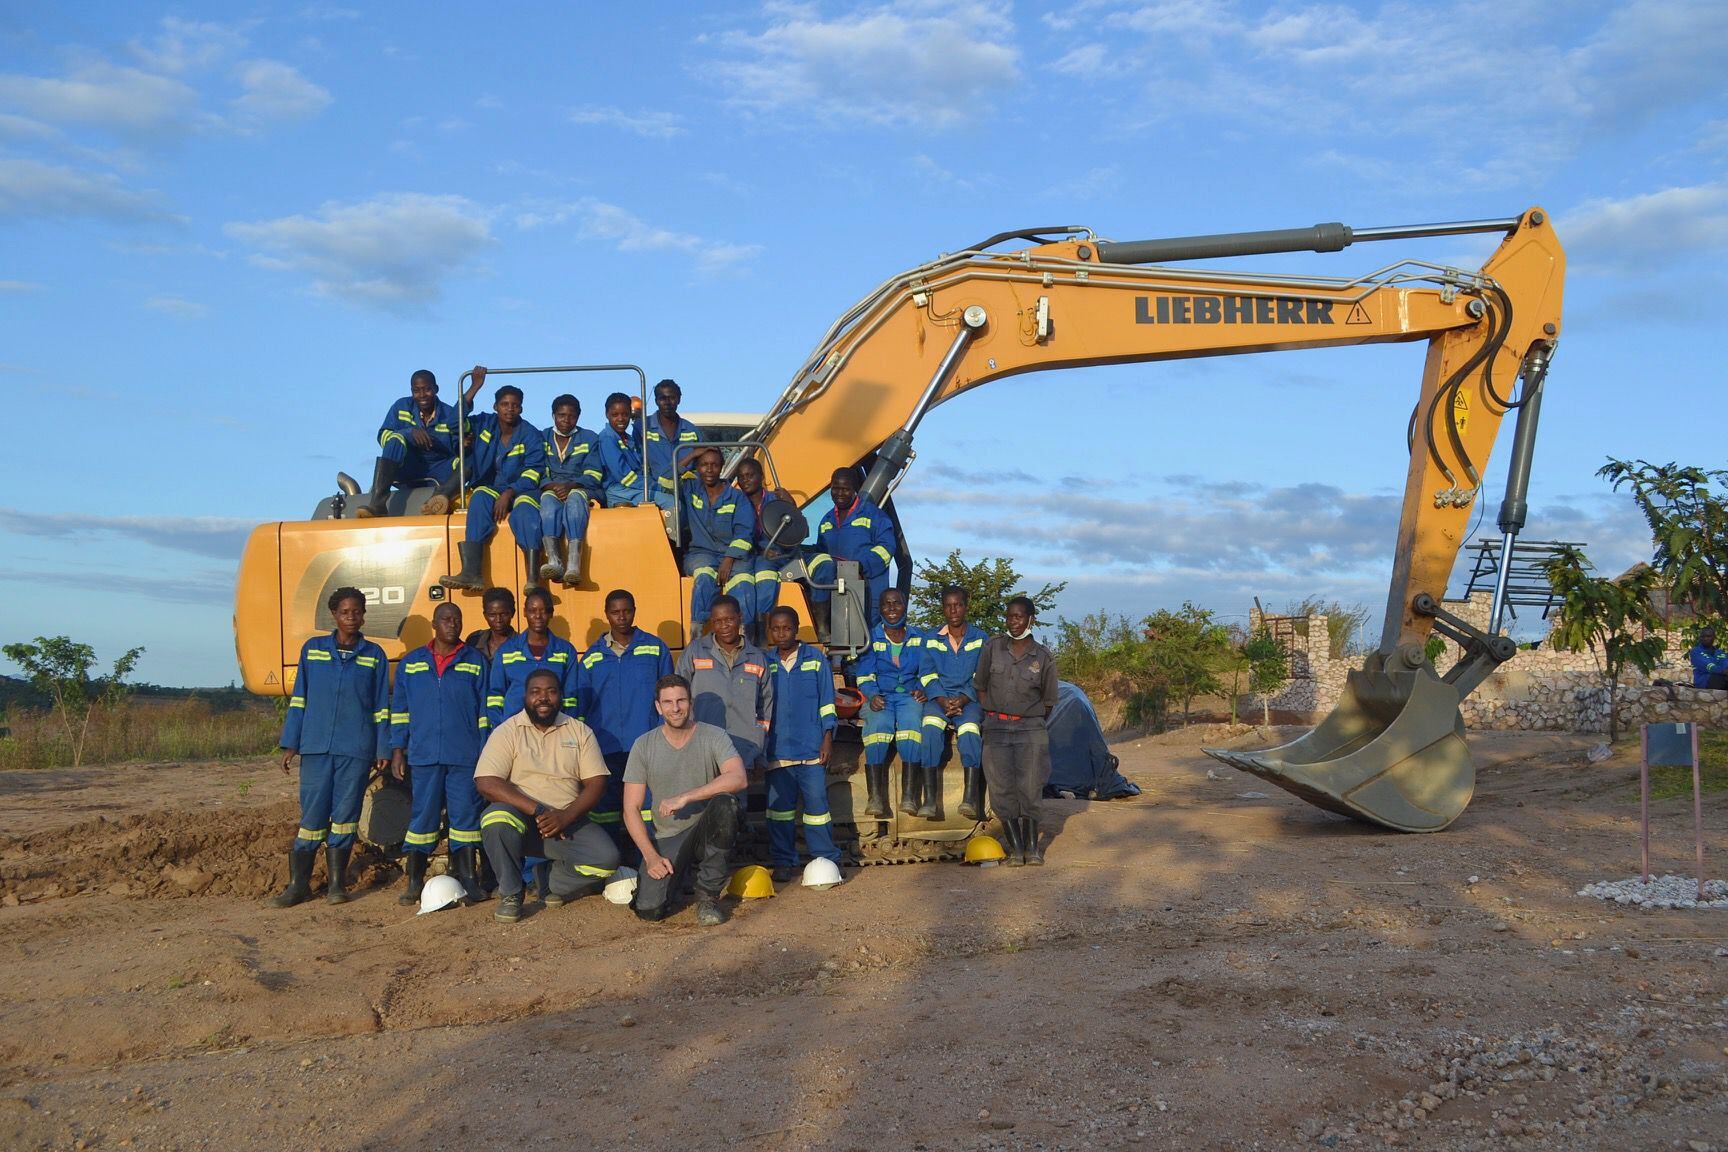 El equipo de Zimbaqua, compuesto únicamente por mujeres, posa en una mina a cielo abierto de aguamarinas en el norte de Zimbabue, al sur del continente Africano, el pasado mayo de 2021.